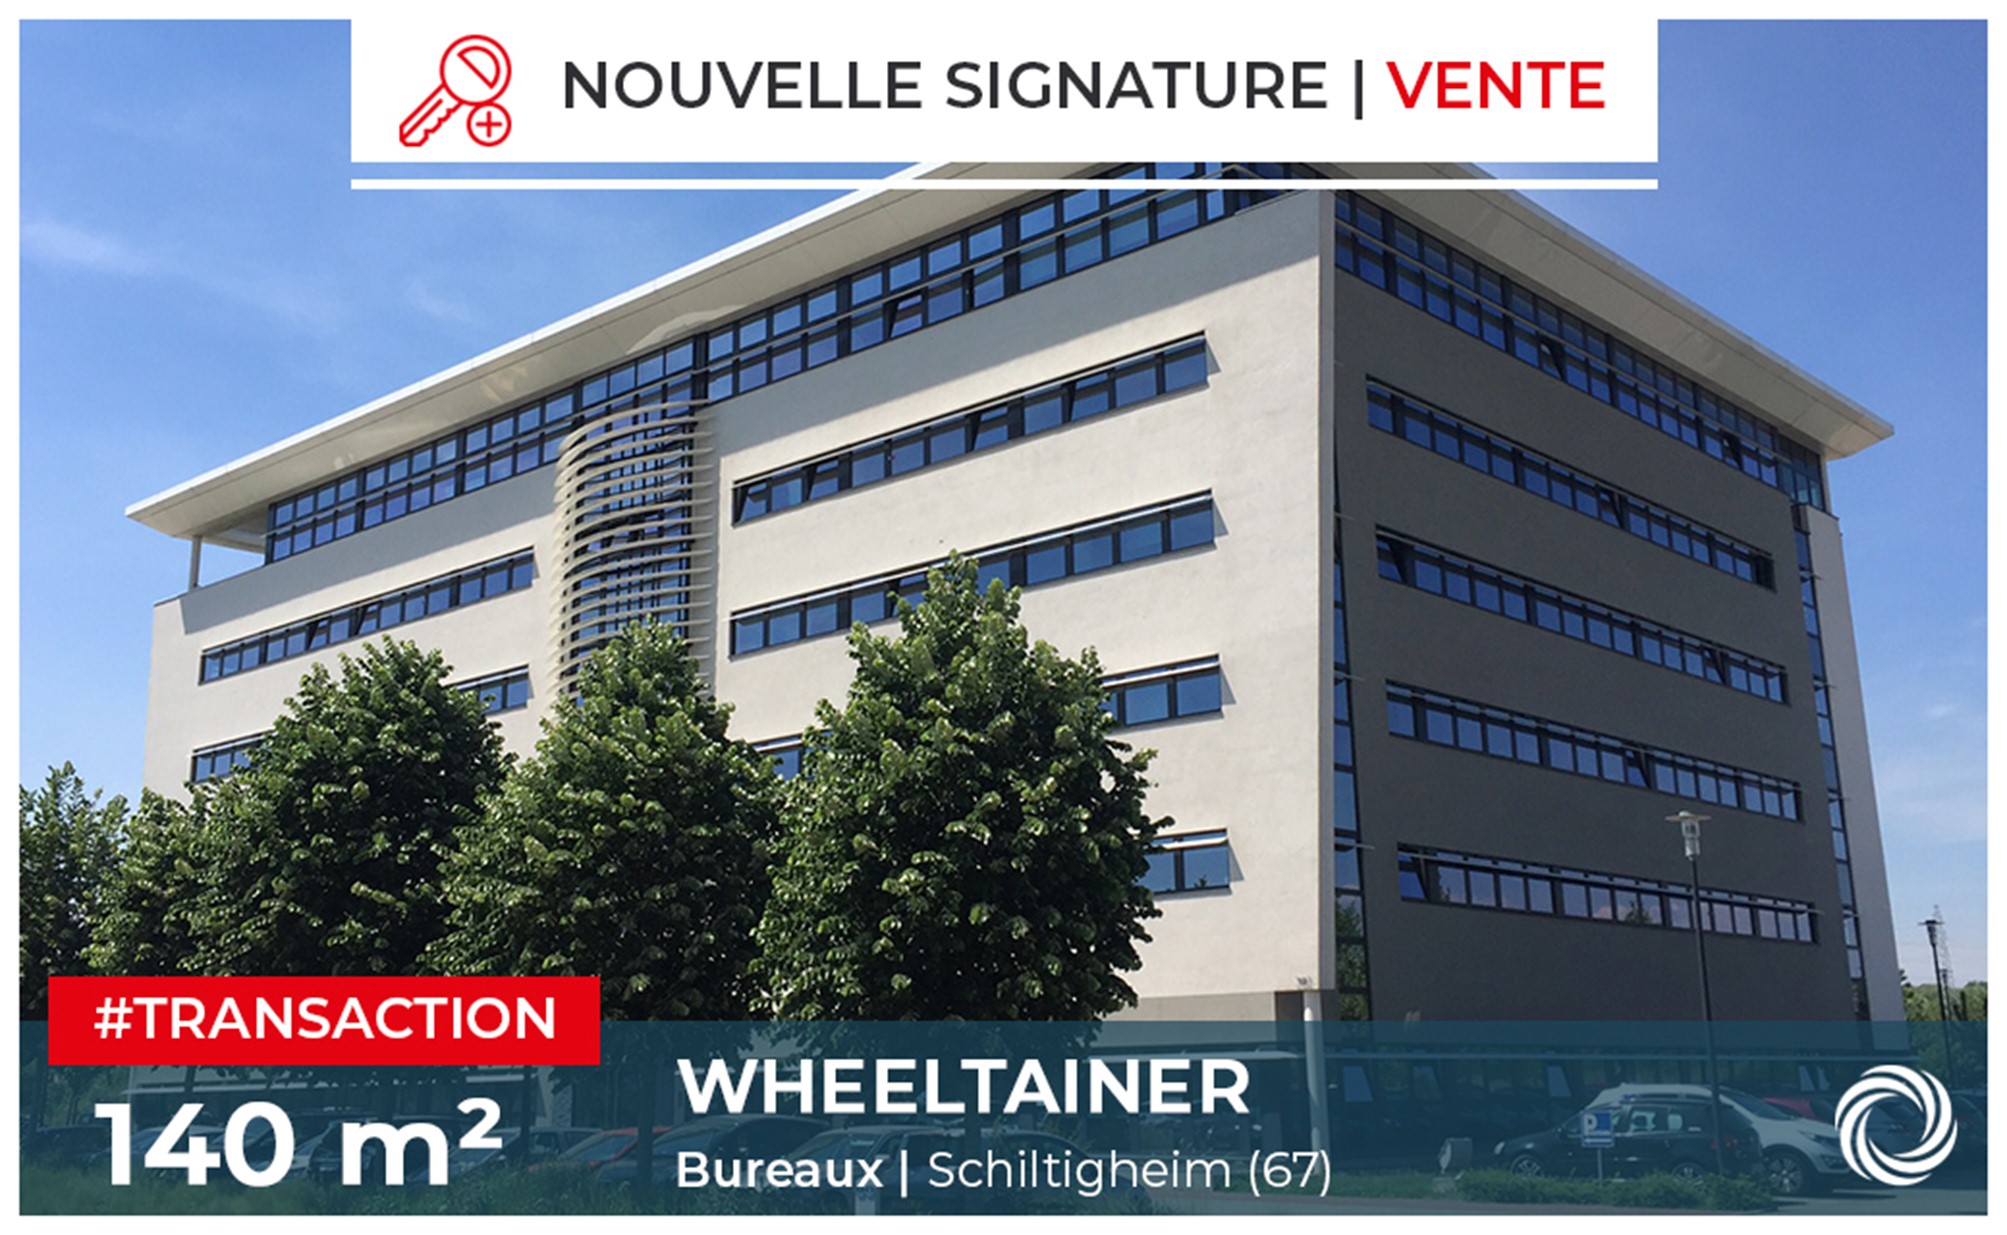 Transaction : Strasbourg (67), la société WHEELTAINER implante une agence en Alsace